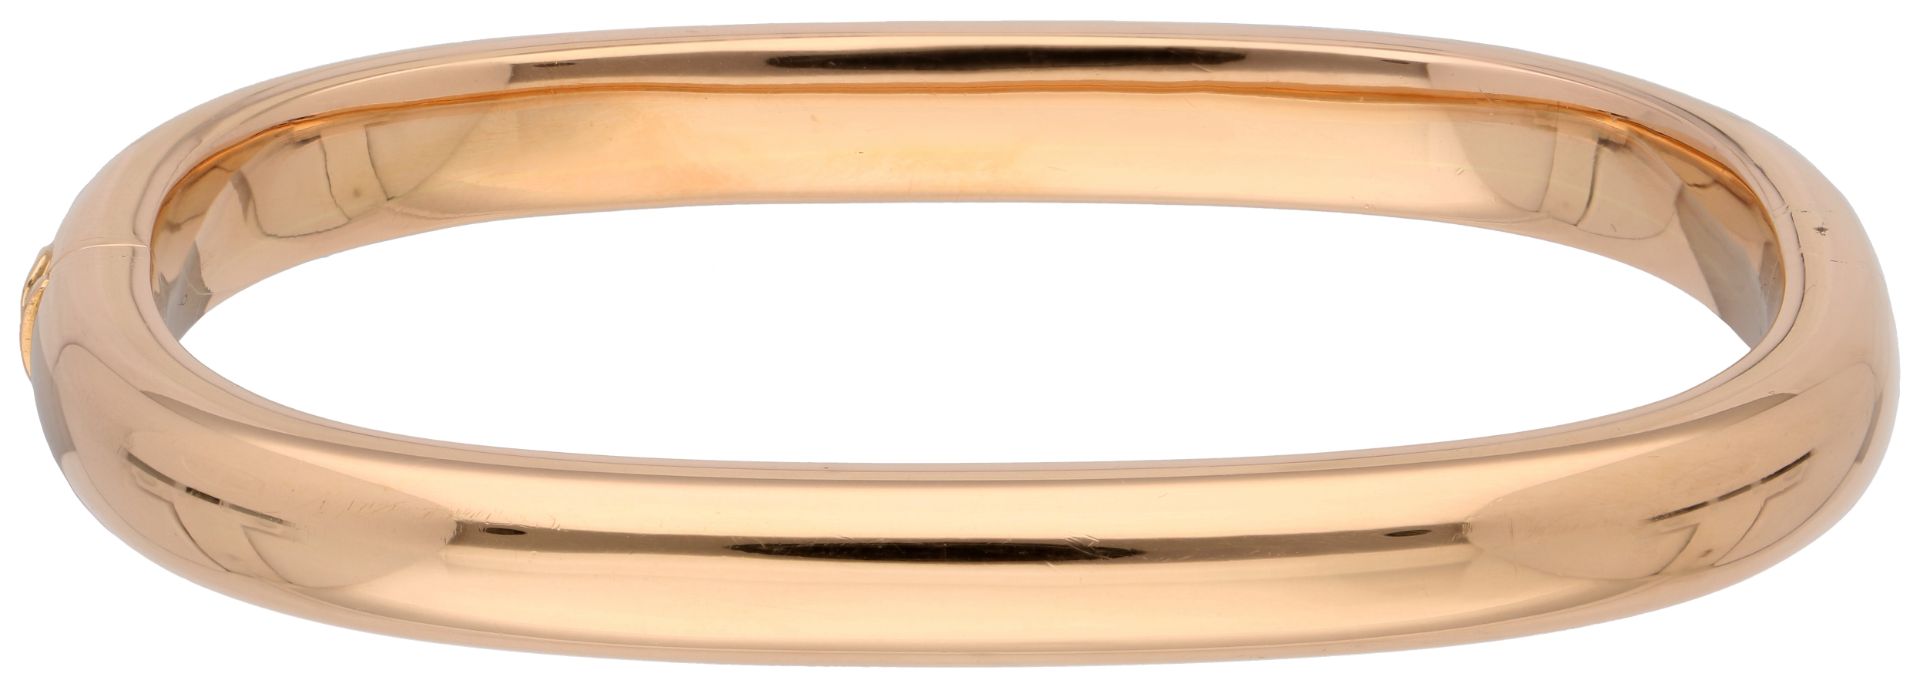 No Reserve - 18K Rose gold bangle bracelet. - Image 3 of 3